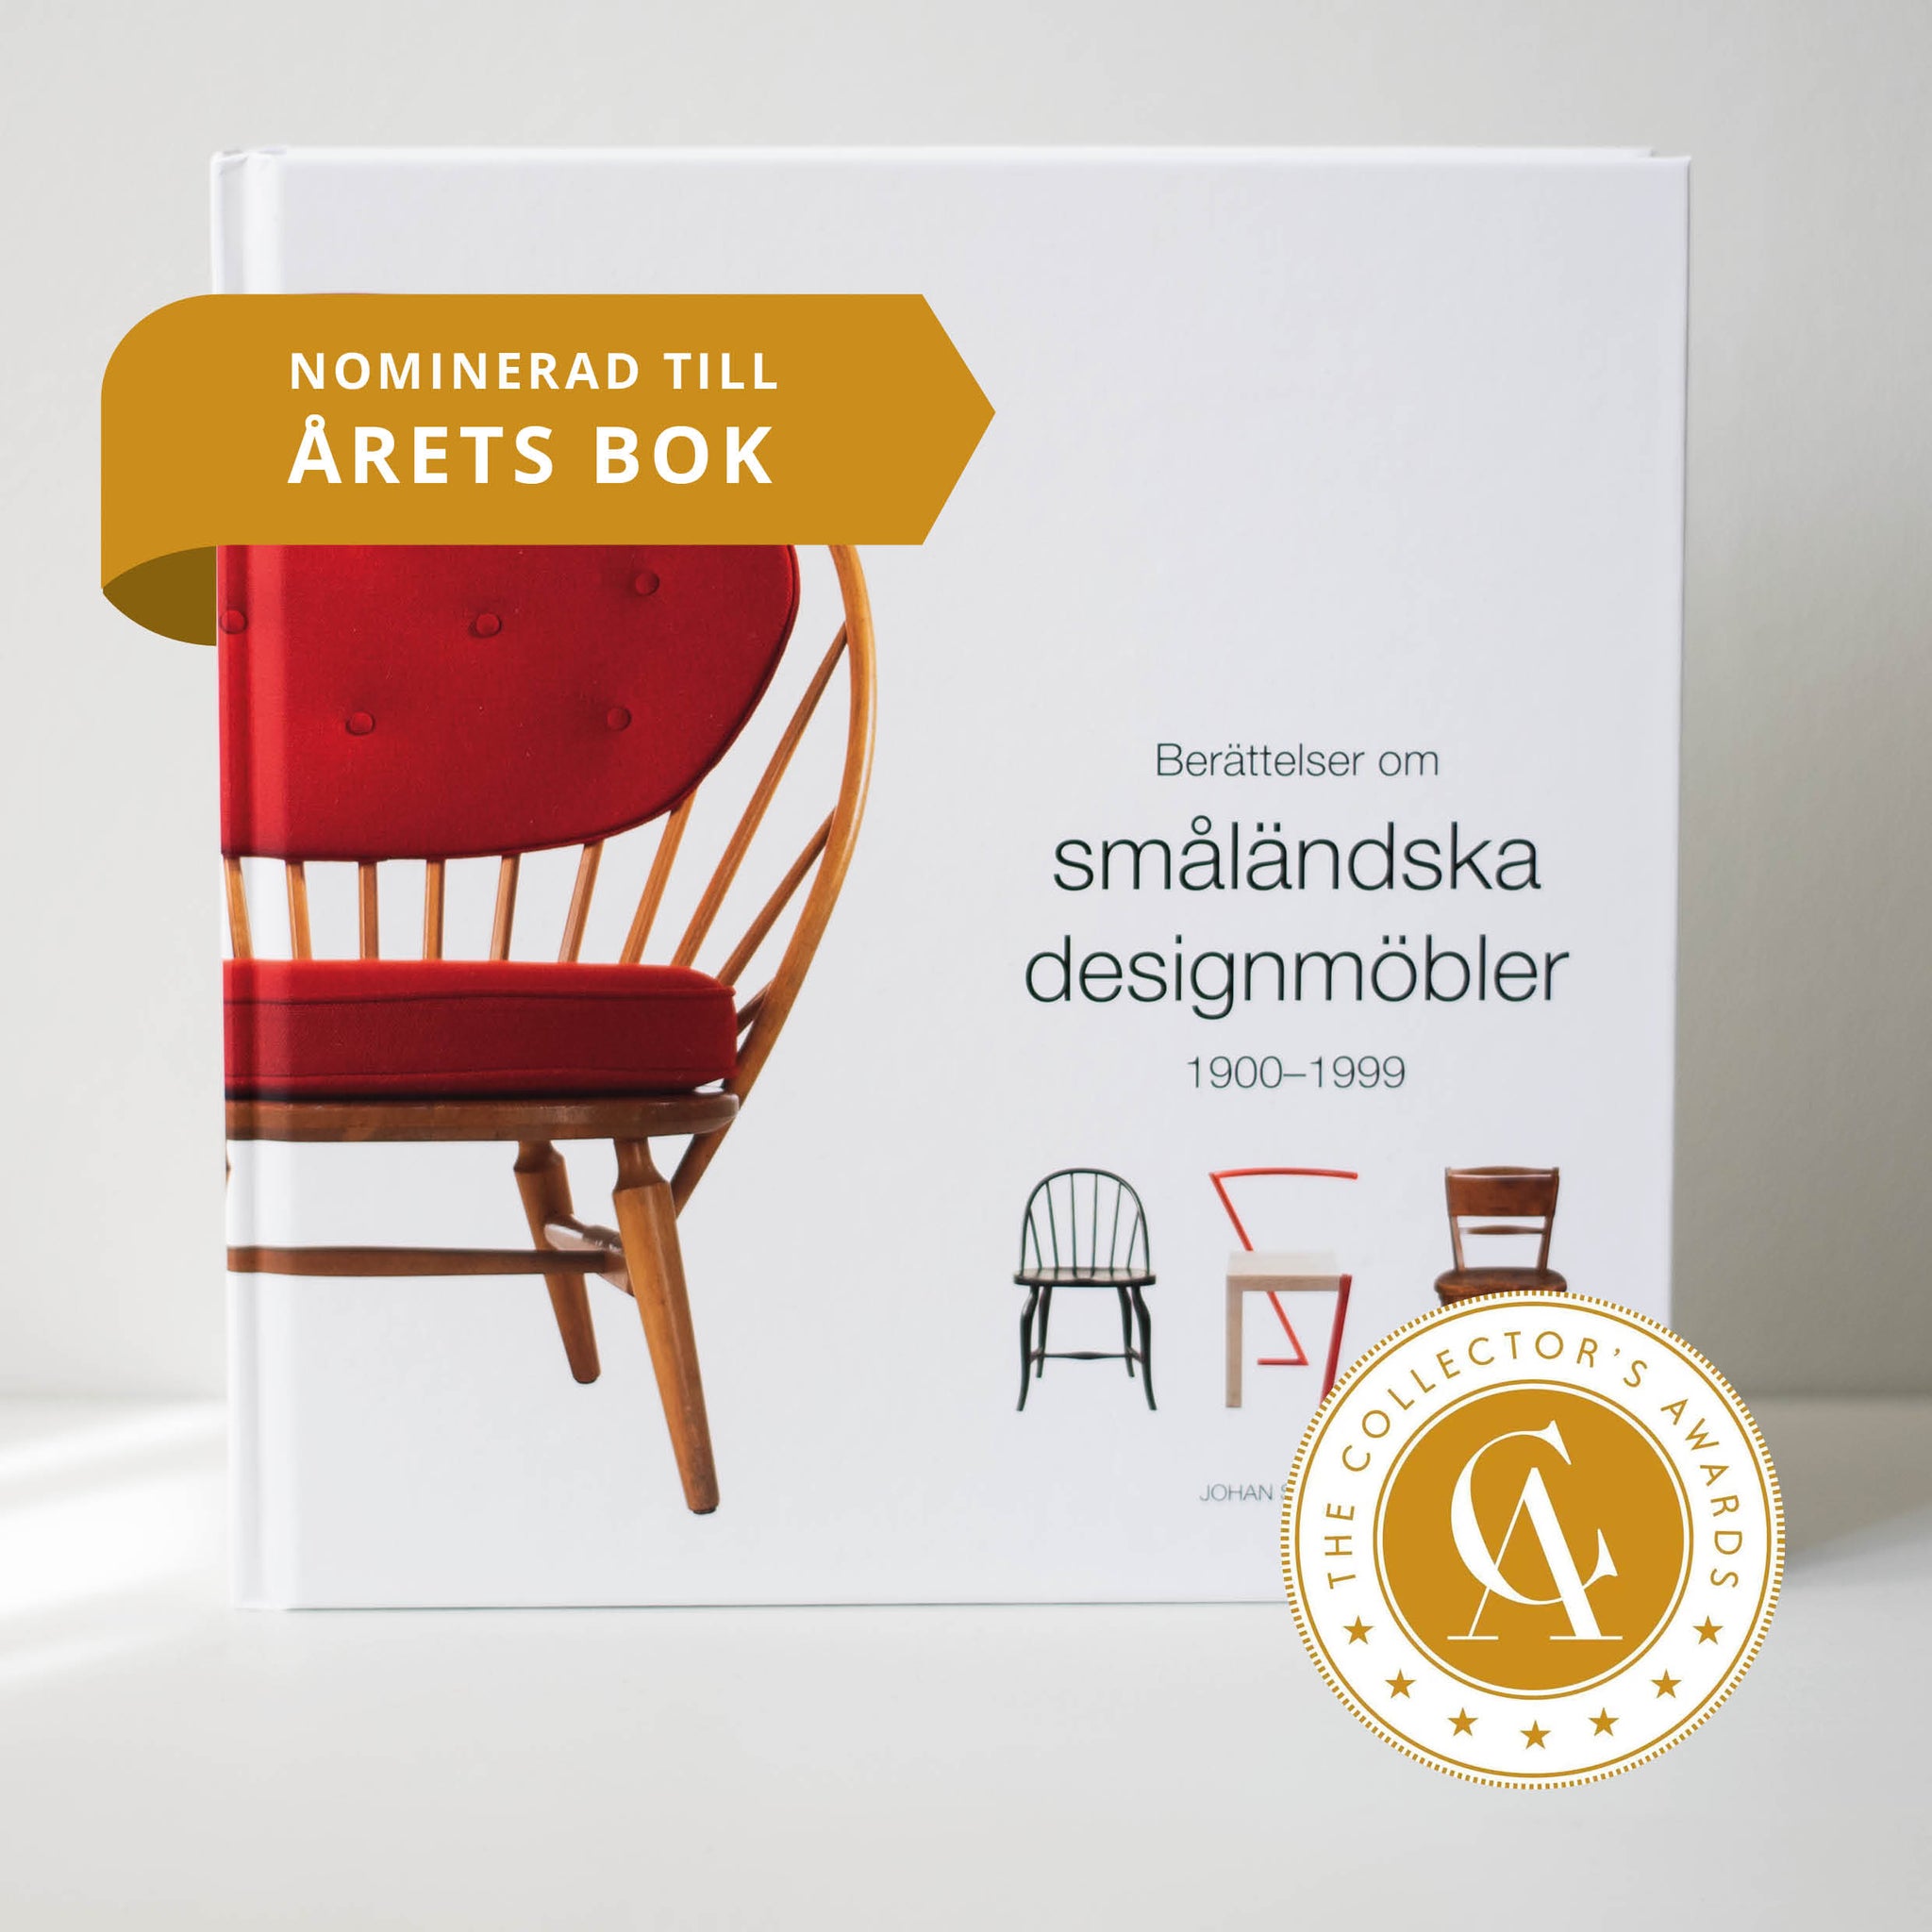 Berättelser om småländska designmöbler nominerad till Årets bok